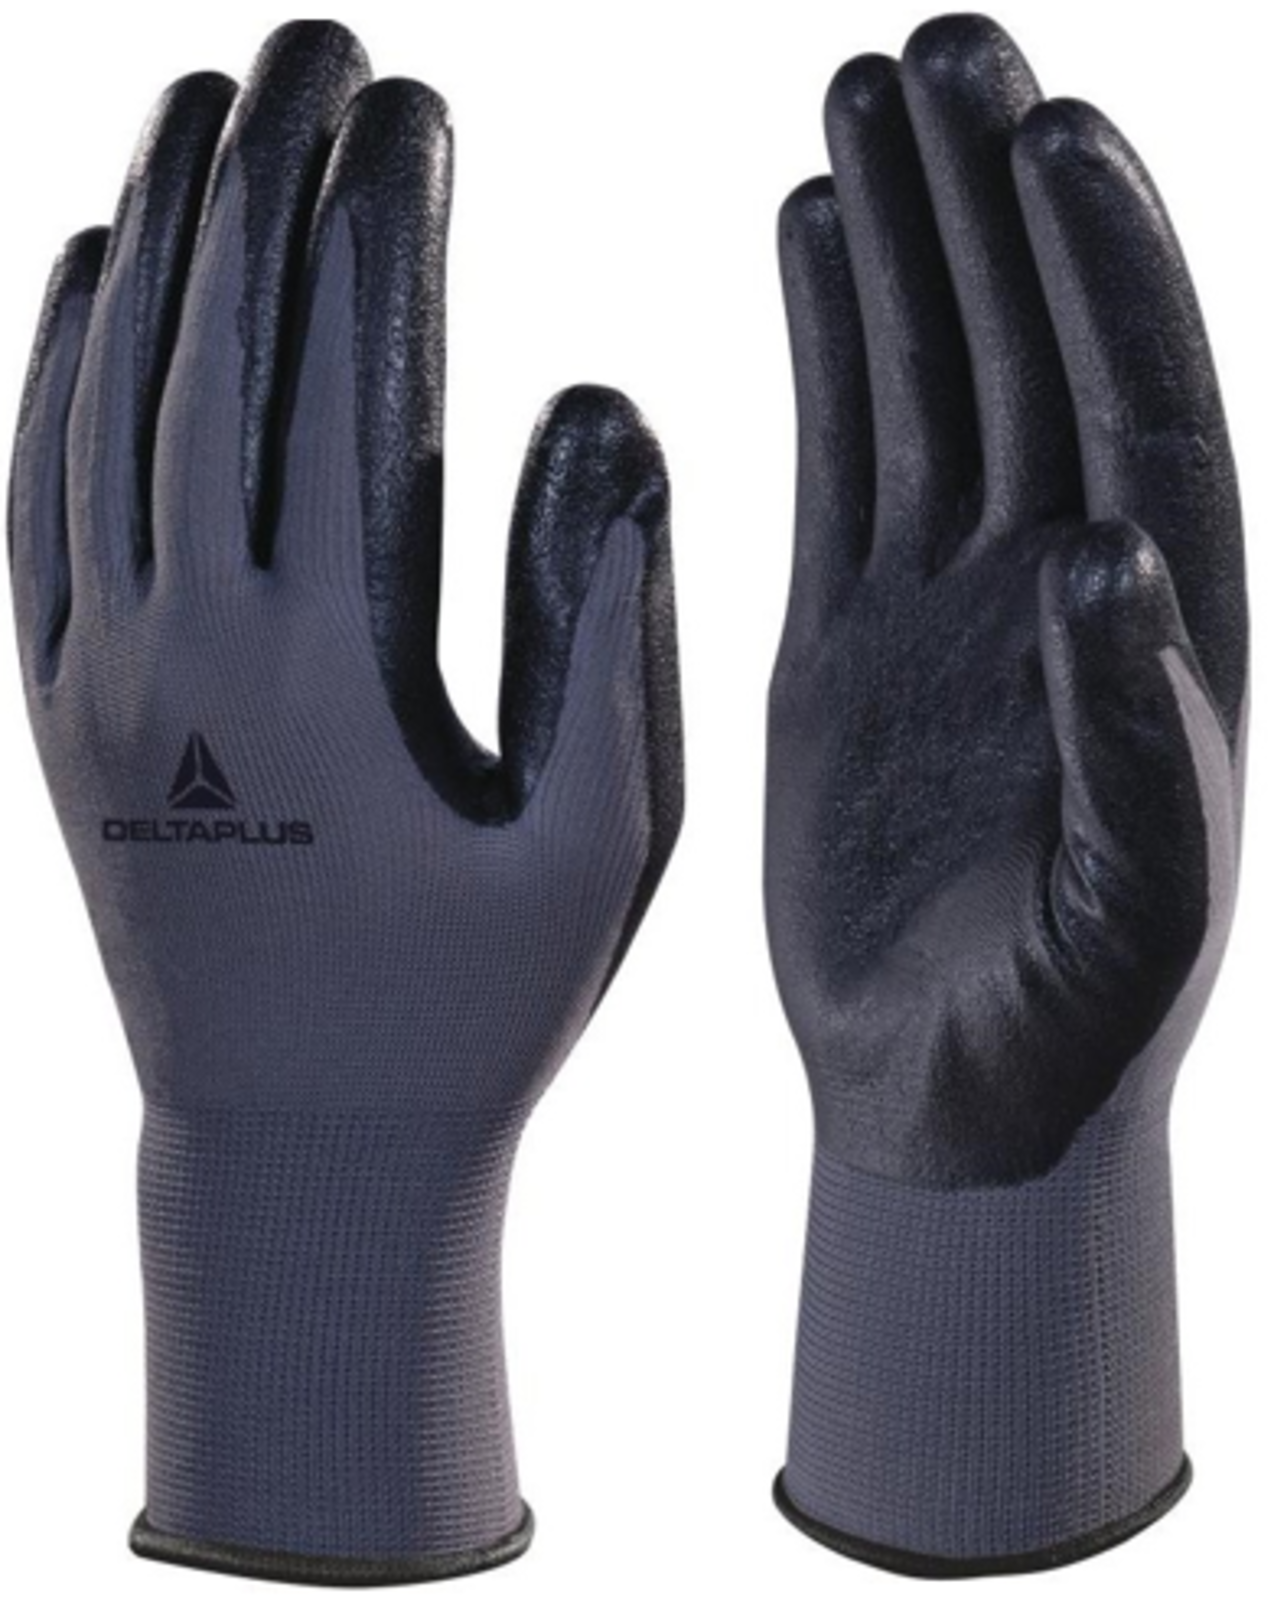 Nitrilové rukavice Delta Plus VE722 - veľkosť: 8/M, farba: sivá/čierna